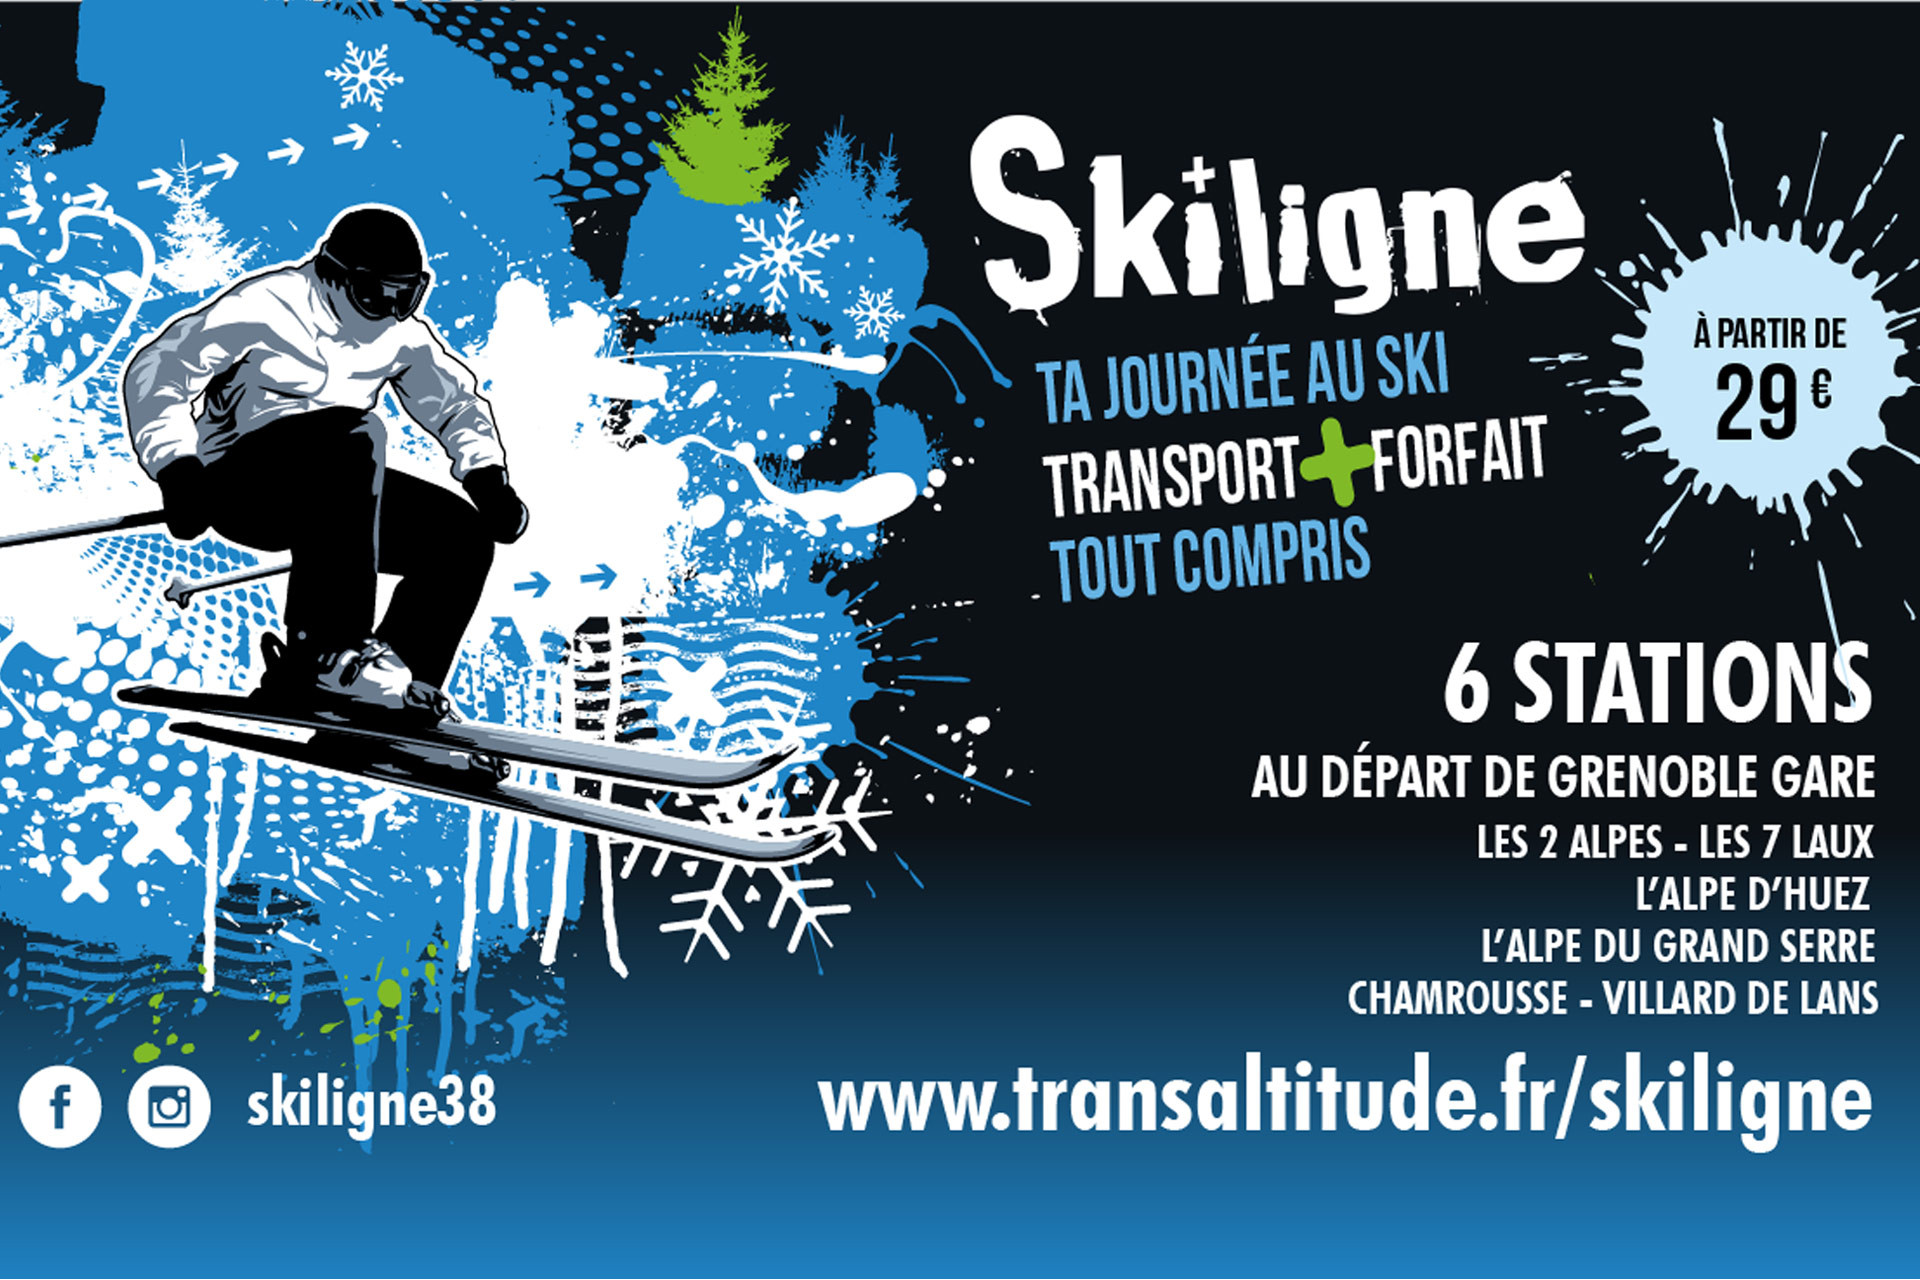 Chamrousse skiligne bus transaltitude forfait tout compris grenoble gare station ski montagne hiver isère alpes france